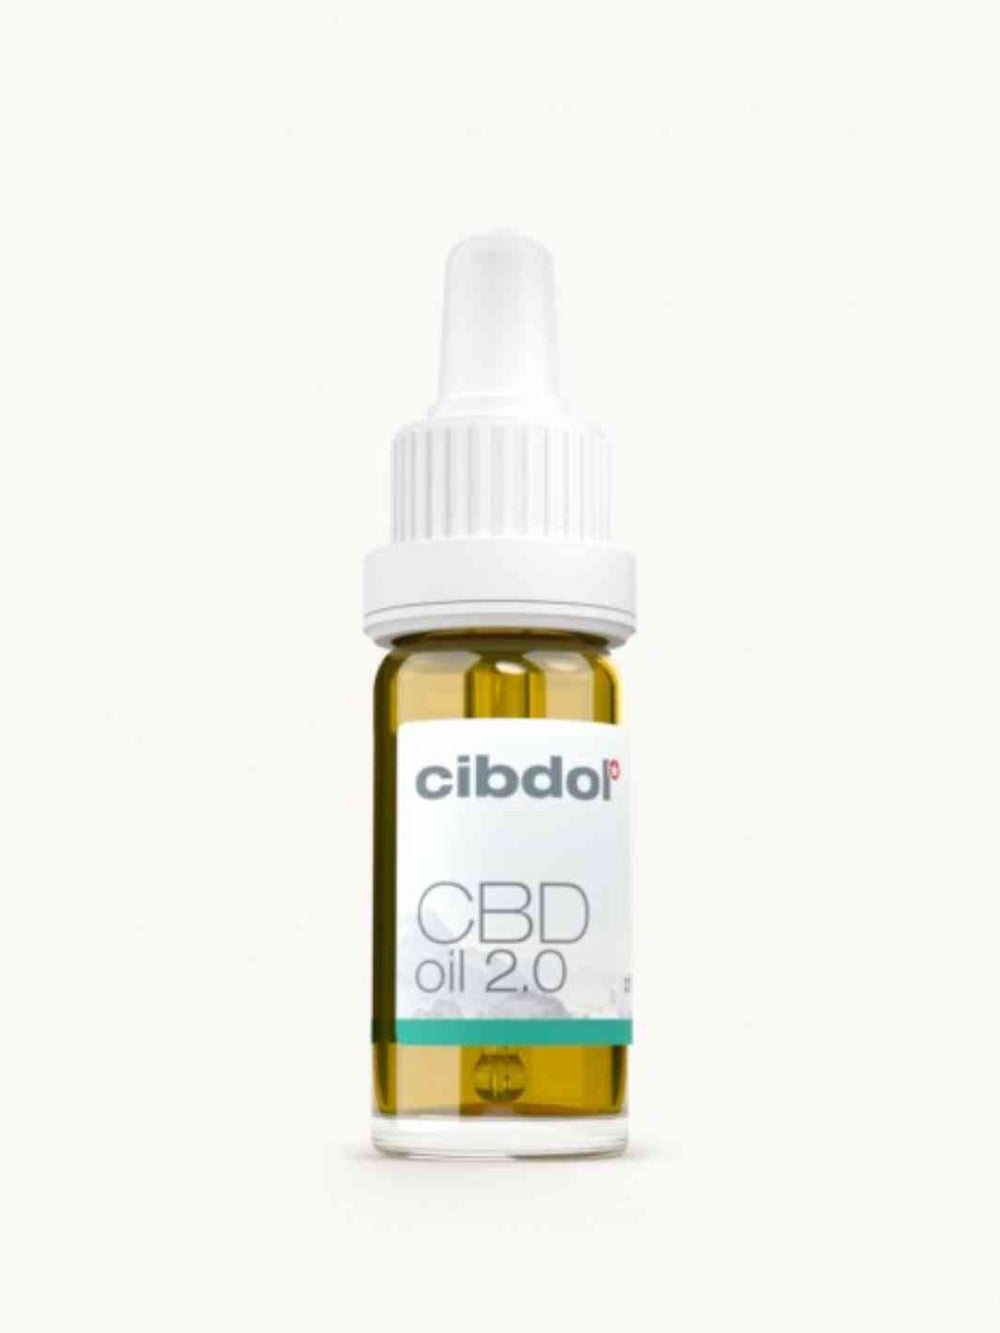 Flacon d'huile CBD de marque Cibdol fort dosage